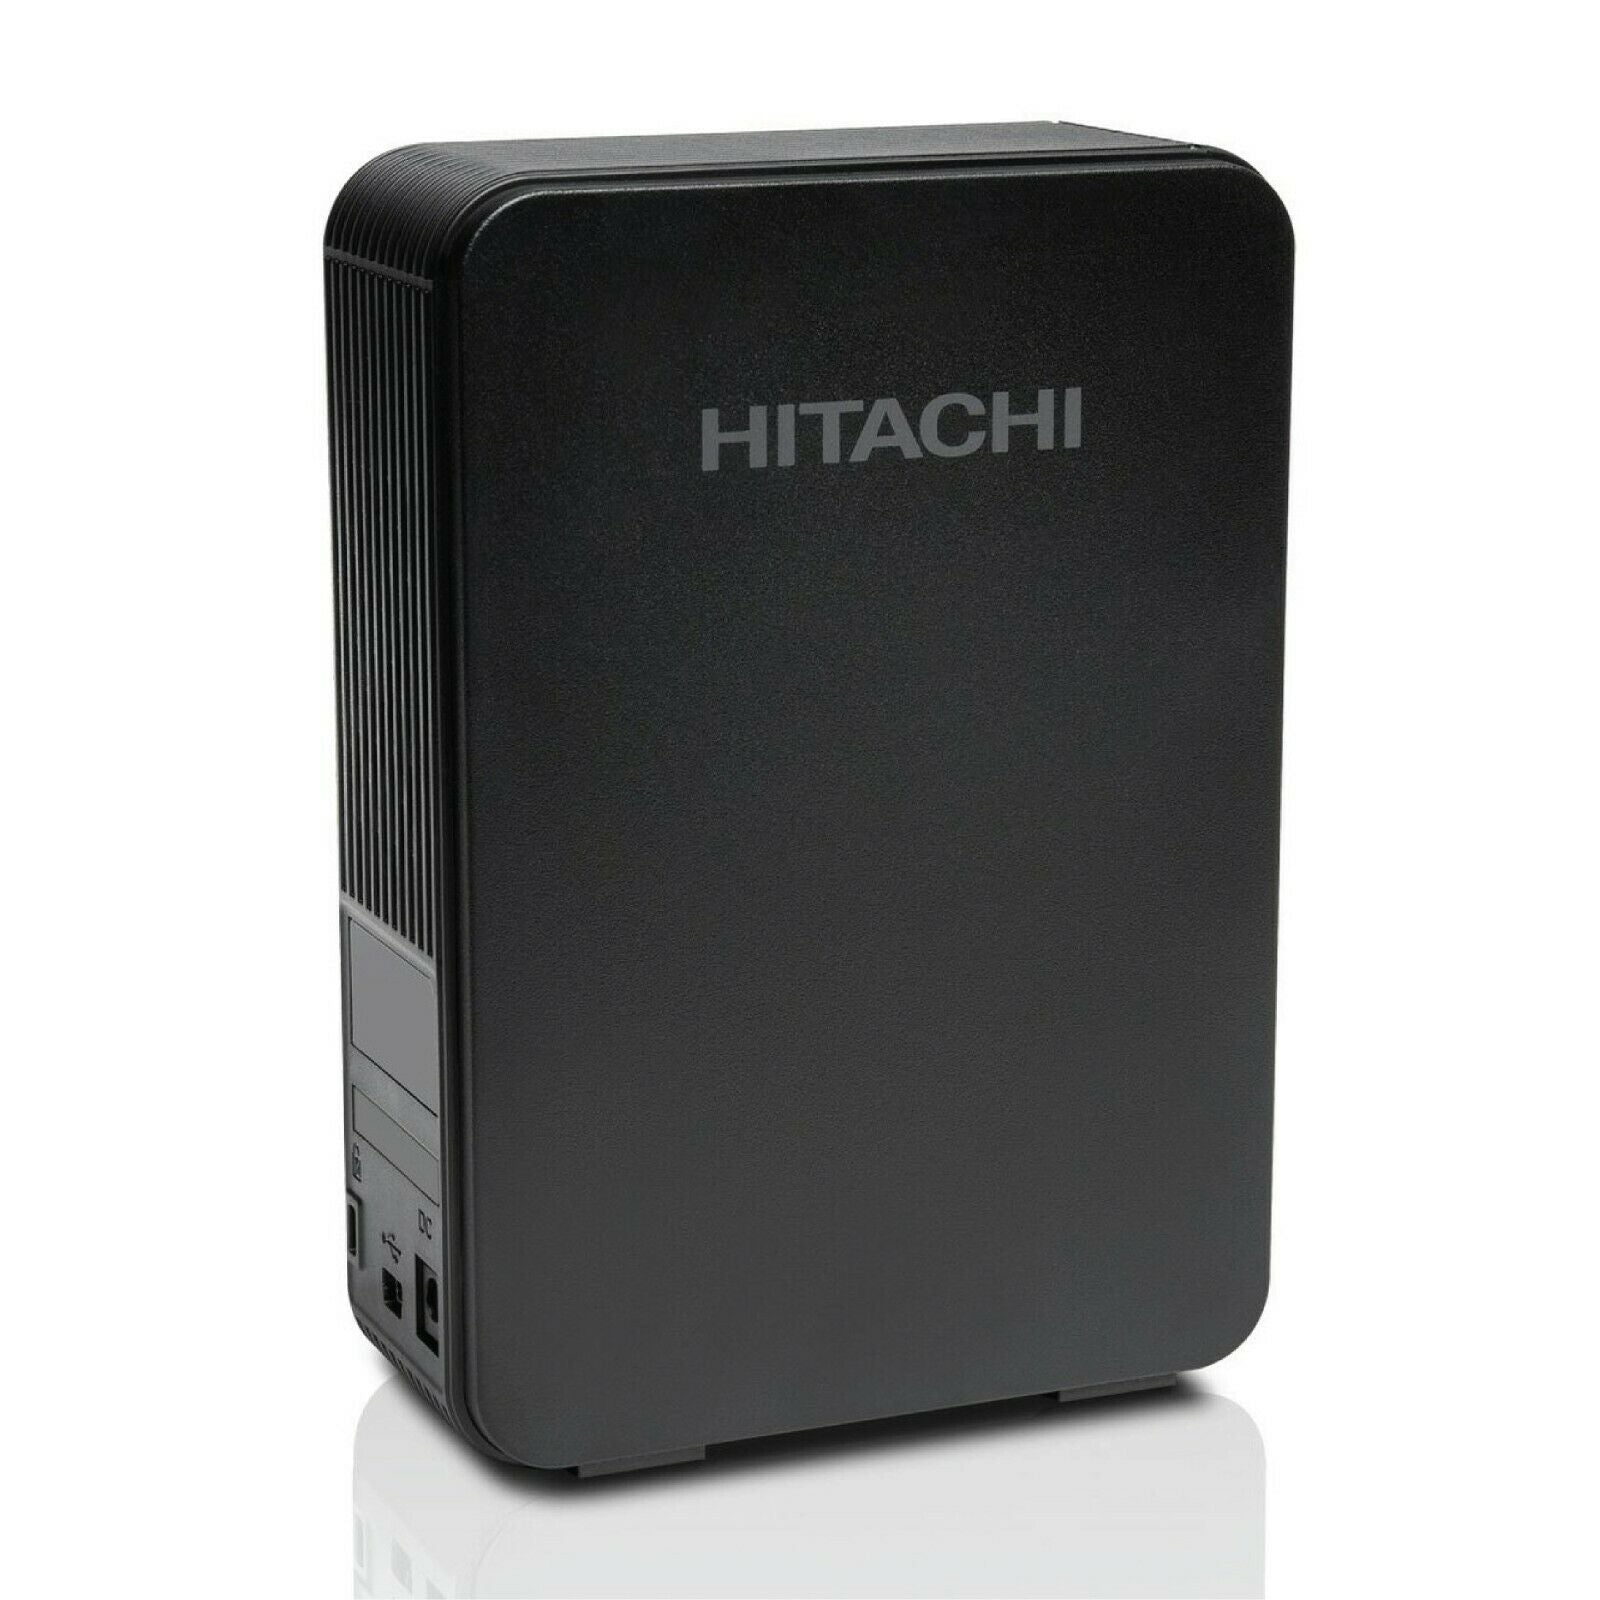 Hitachi 3.5" Touro Desk DX3 4TB USB 3.0 Mini Portable External Hard Drive for PC